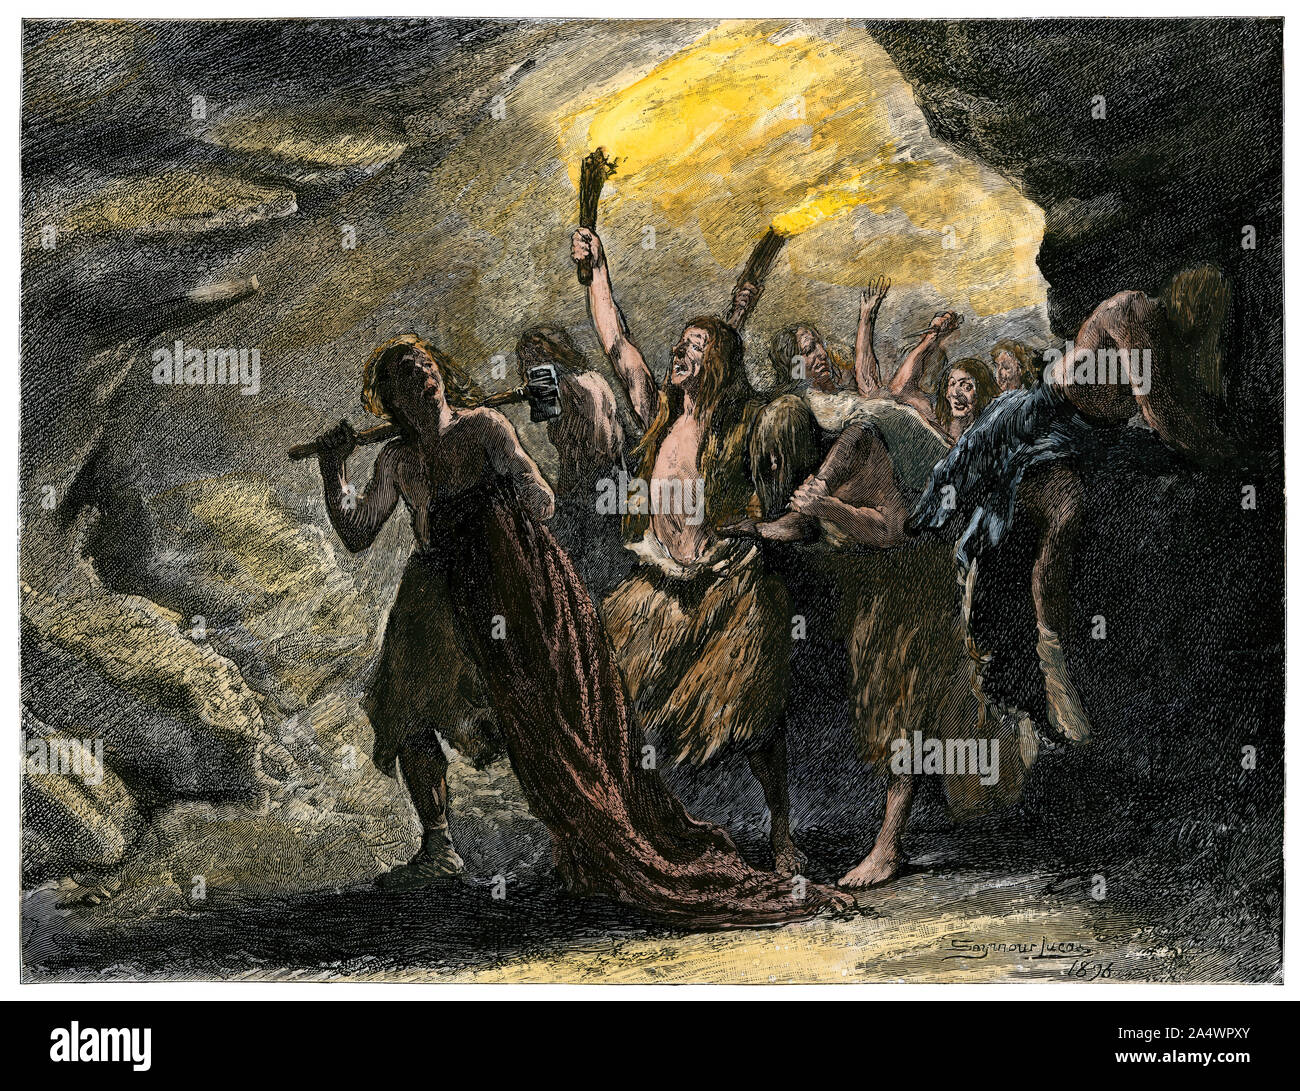 Los seres humanos de la Edad de Piedra llevando antorchas en una cueva. Xilografía coloreada a mano Foto de stock